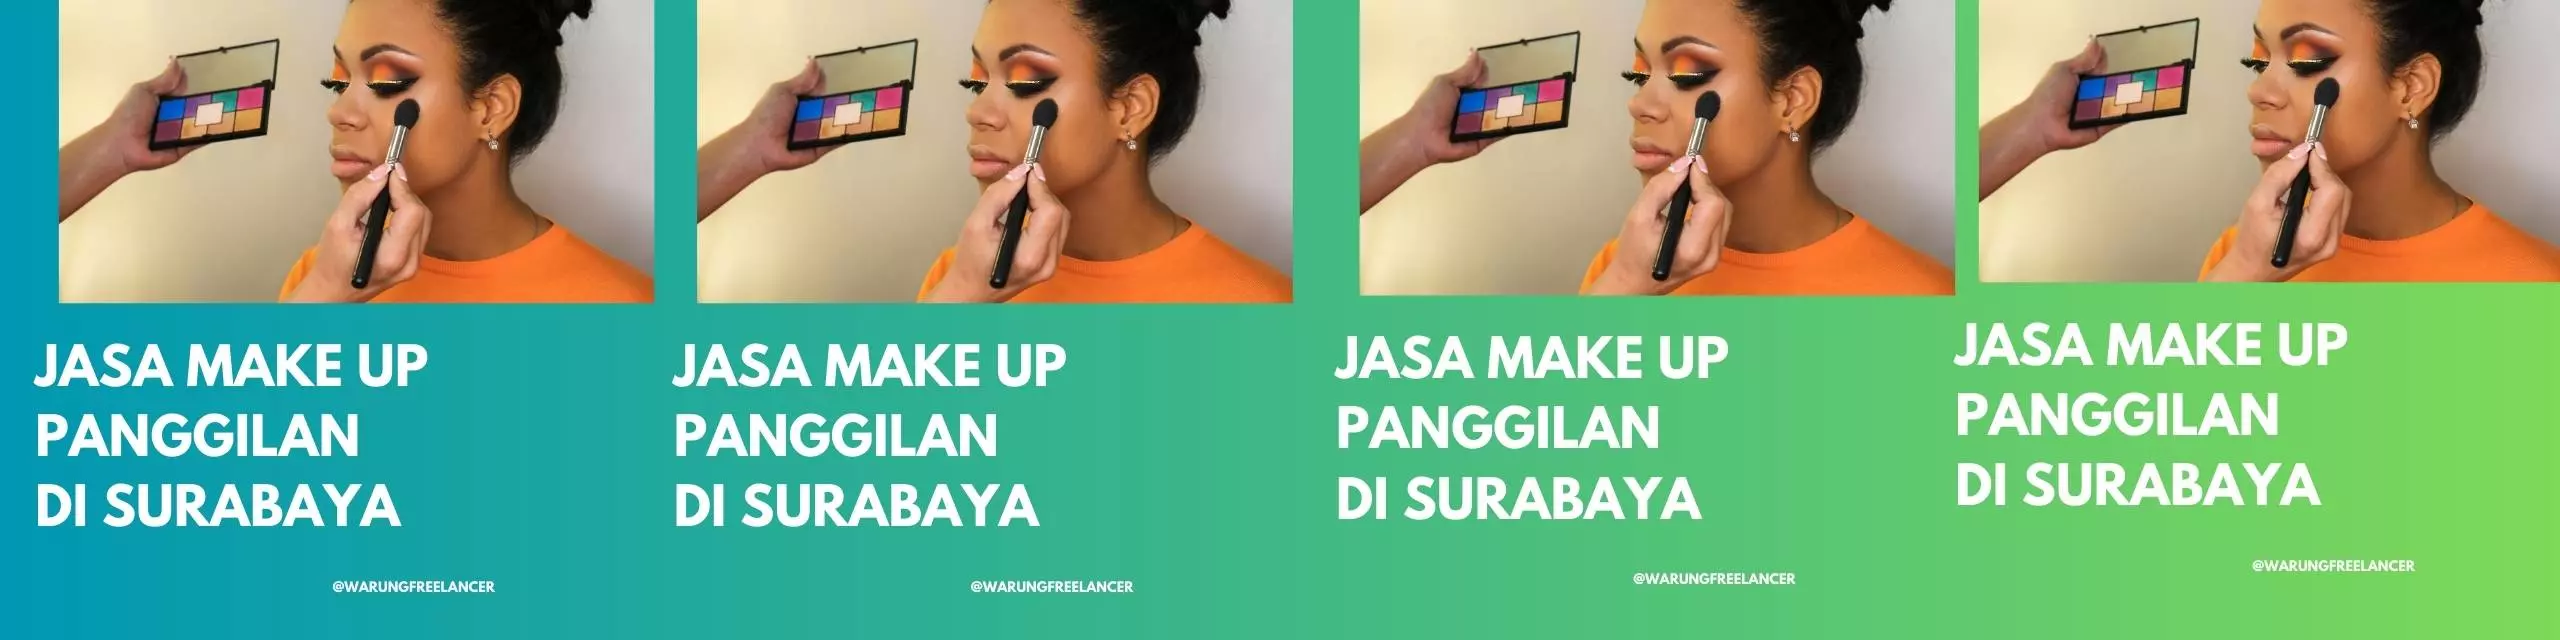 Call Make Up Services in Surabaya